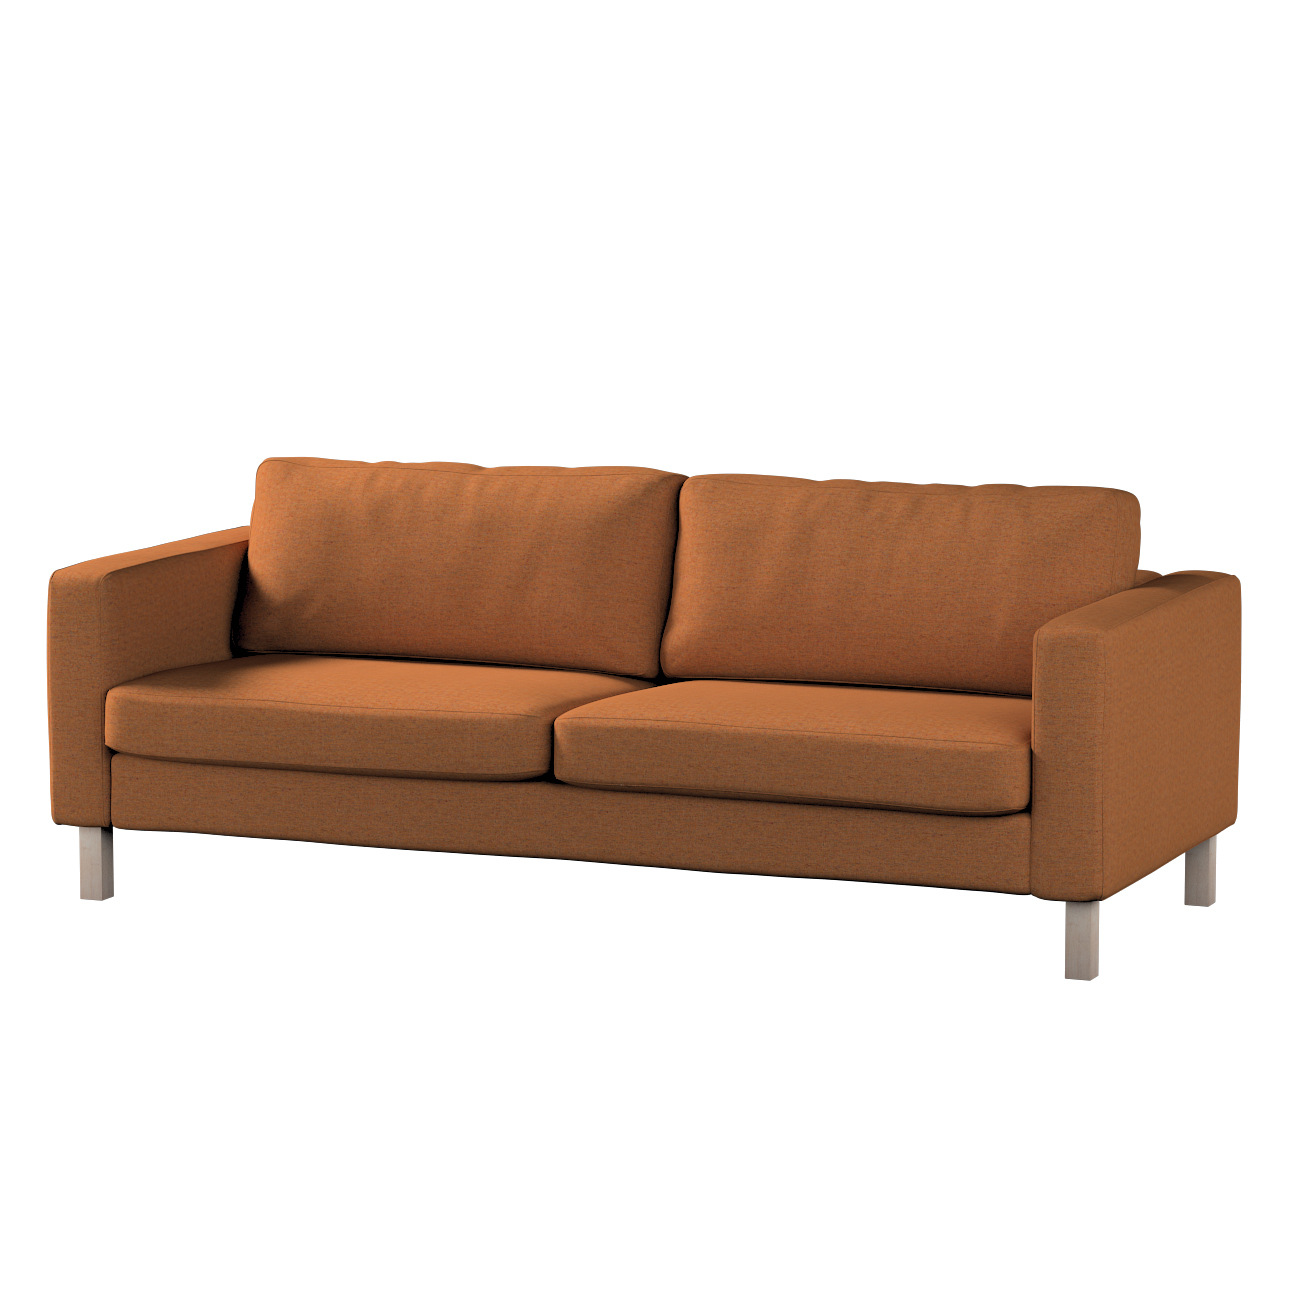 Bezug für Karlstad 3-Sitzer Sofa nicht ausklappbar, kurz, orange, Bezug für günstig online kaufen